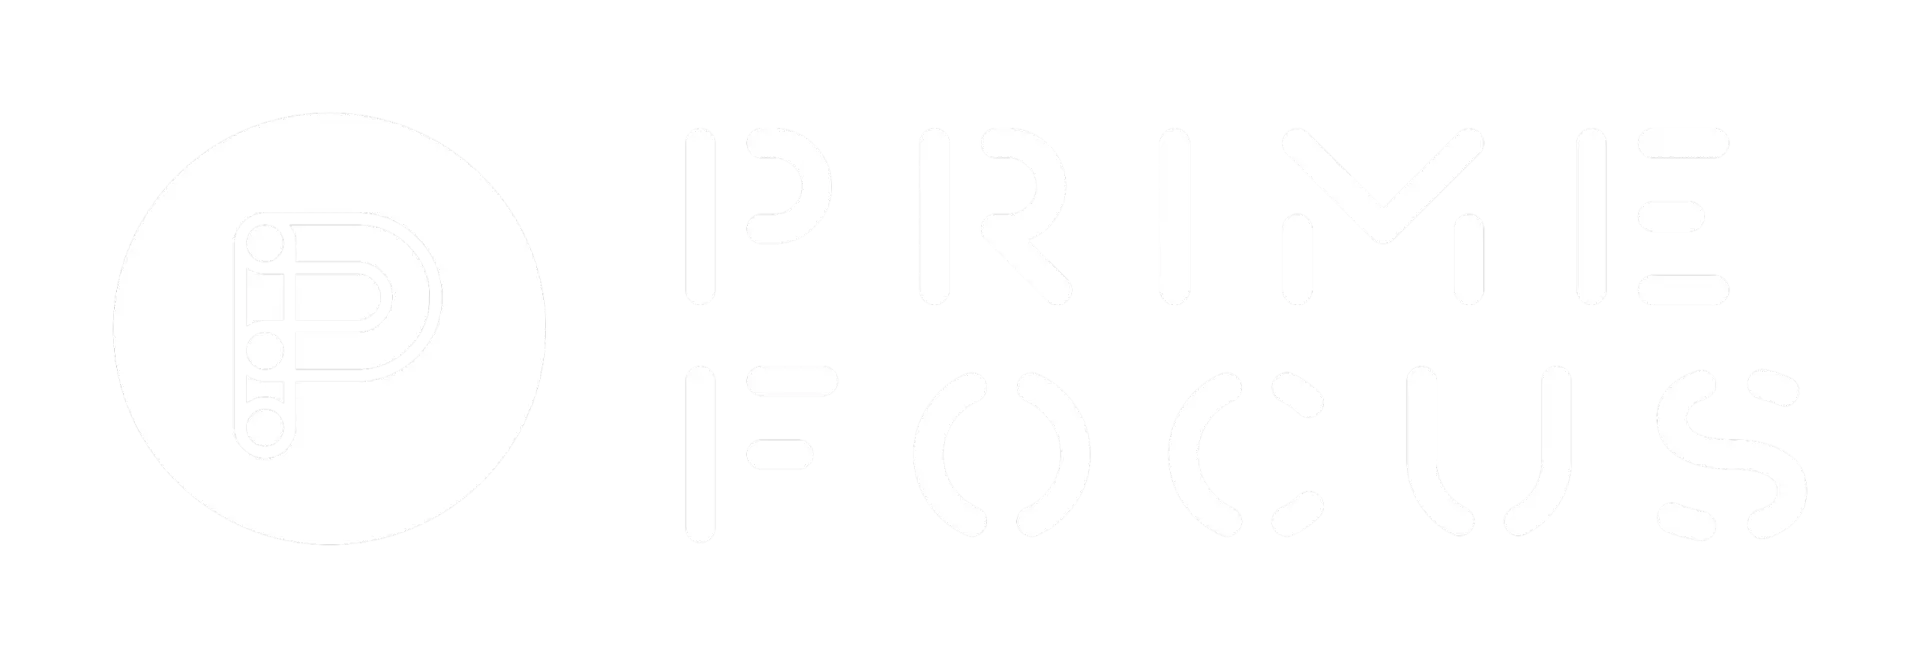 prime-logo-core